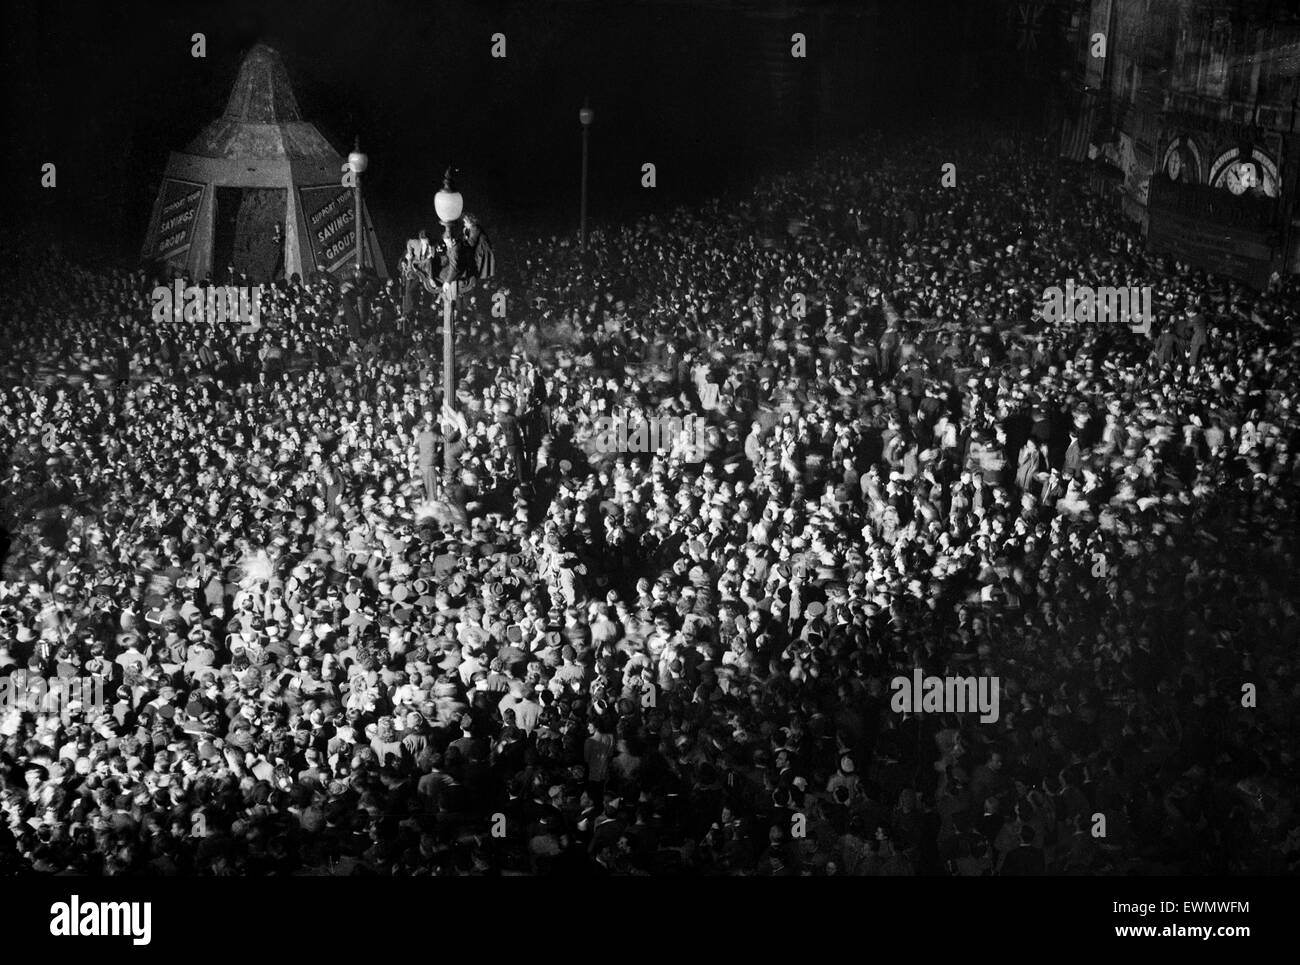 VE Day Feierlichkeiten in London am Ende des zweiten Weltkriegs.  Riesige Menschenmengen versammelten sich um Piccadilly Circus während der Feierlichkeiten.  8. Mai 1945. Stockfoto